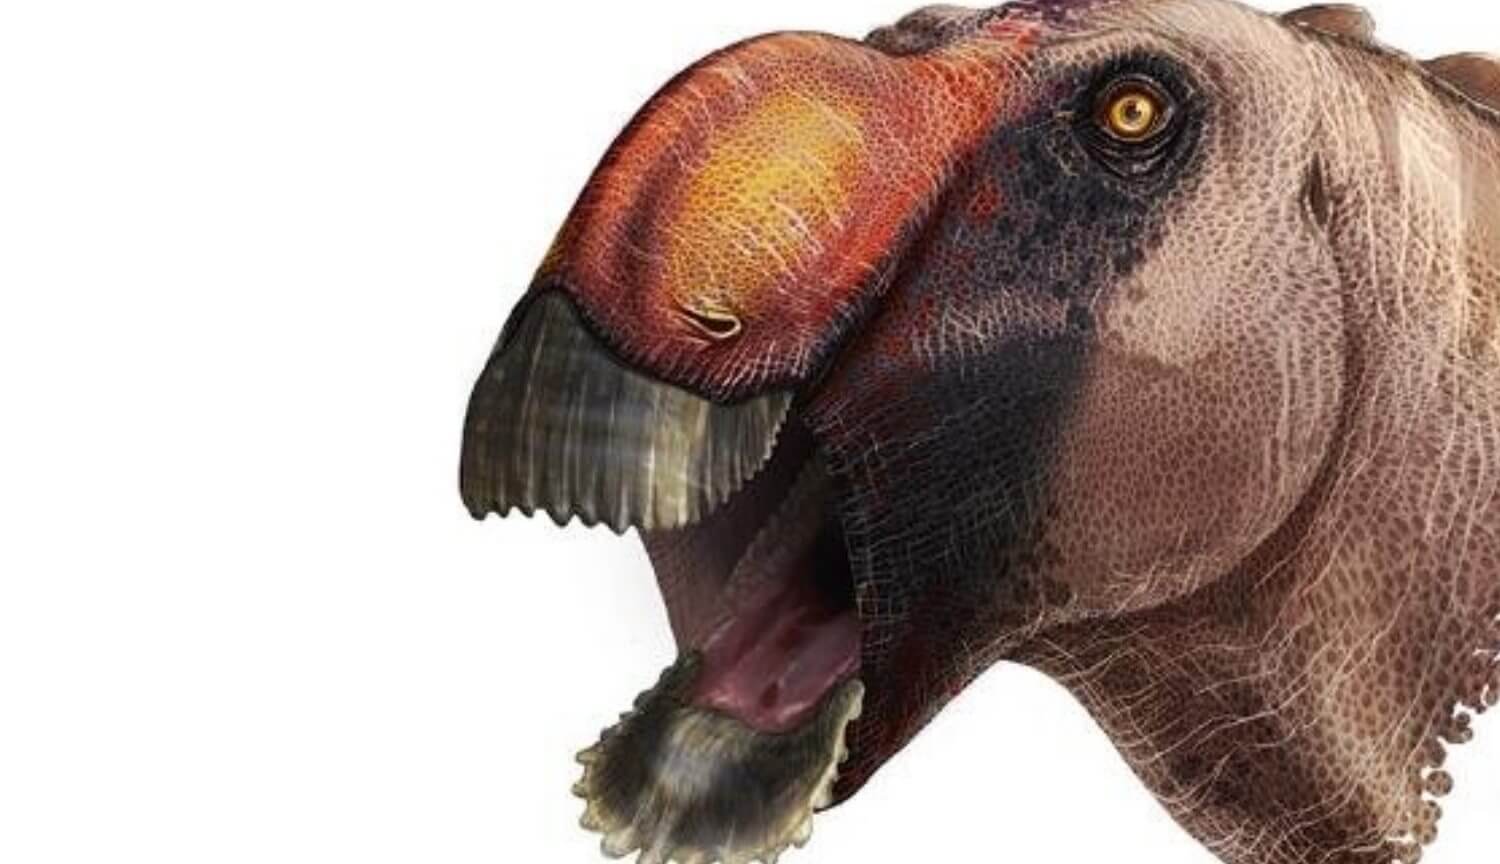 Les scientifiques ont découvert un nouveau dinosaure. Il ressemble à un canard